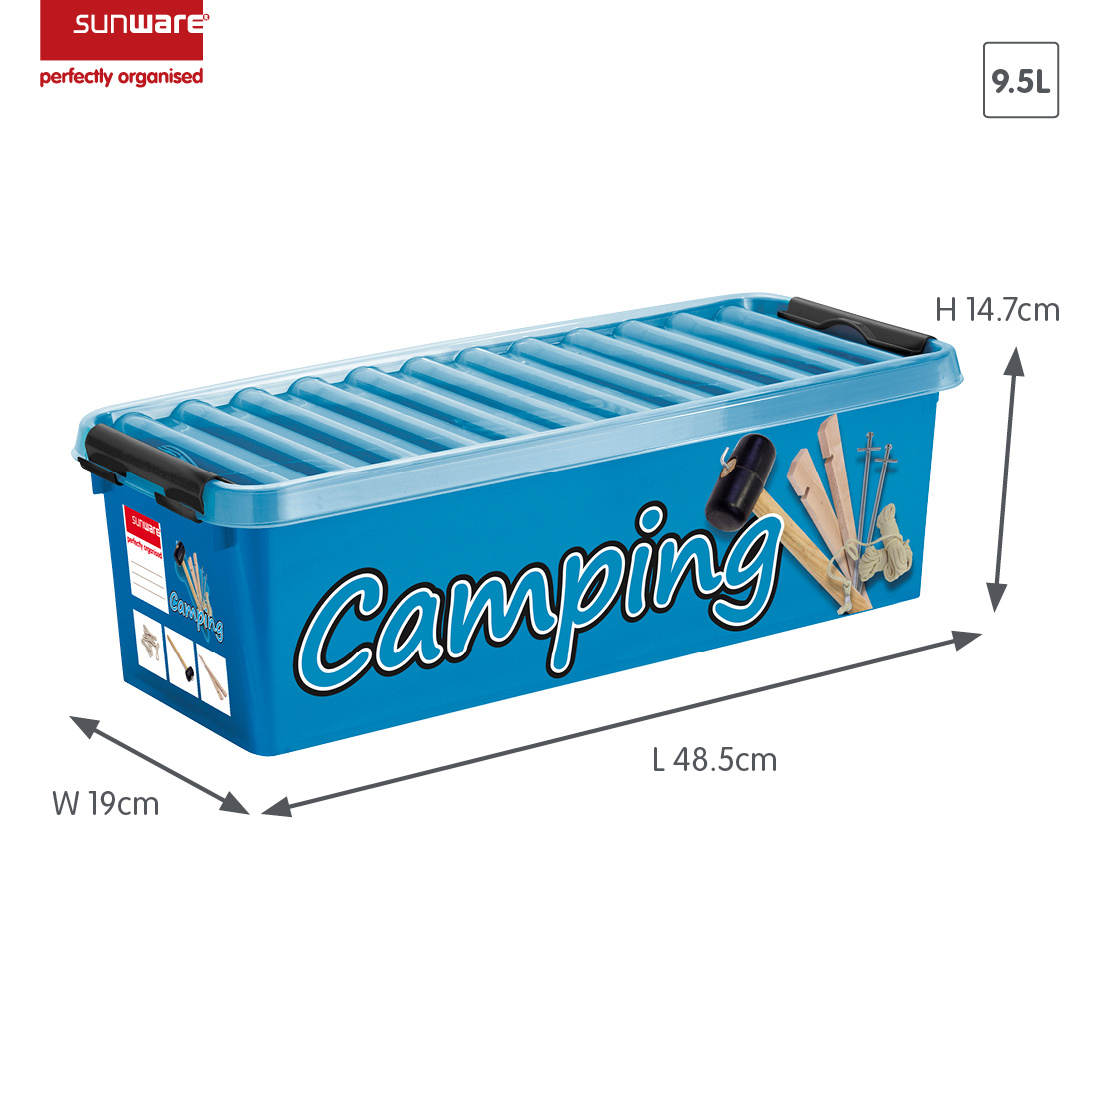 Q-line Camping Aufbewahrungsbox 9,5L blau schwarz